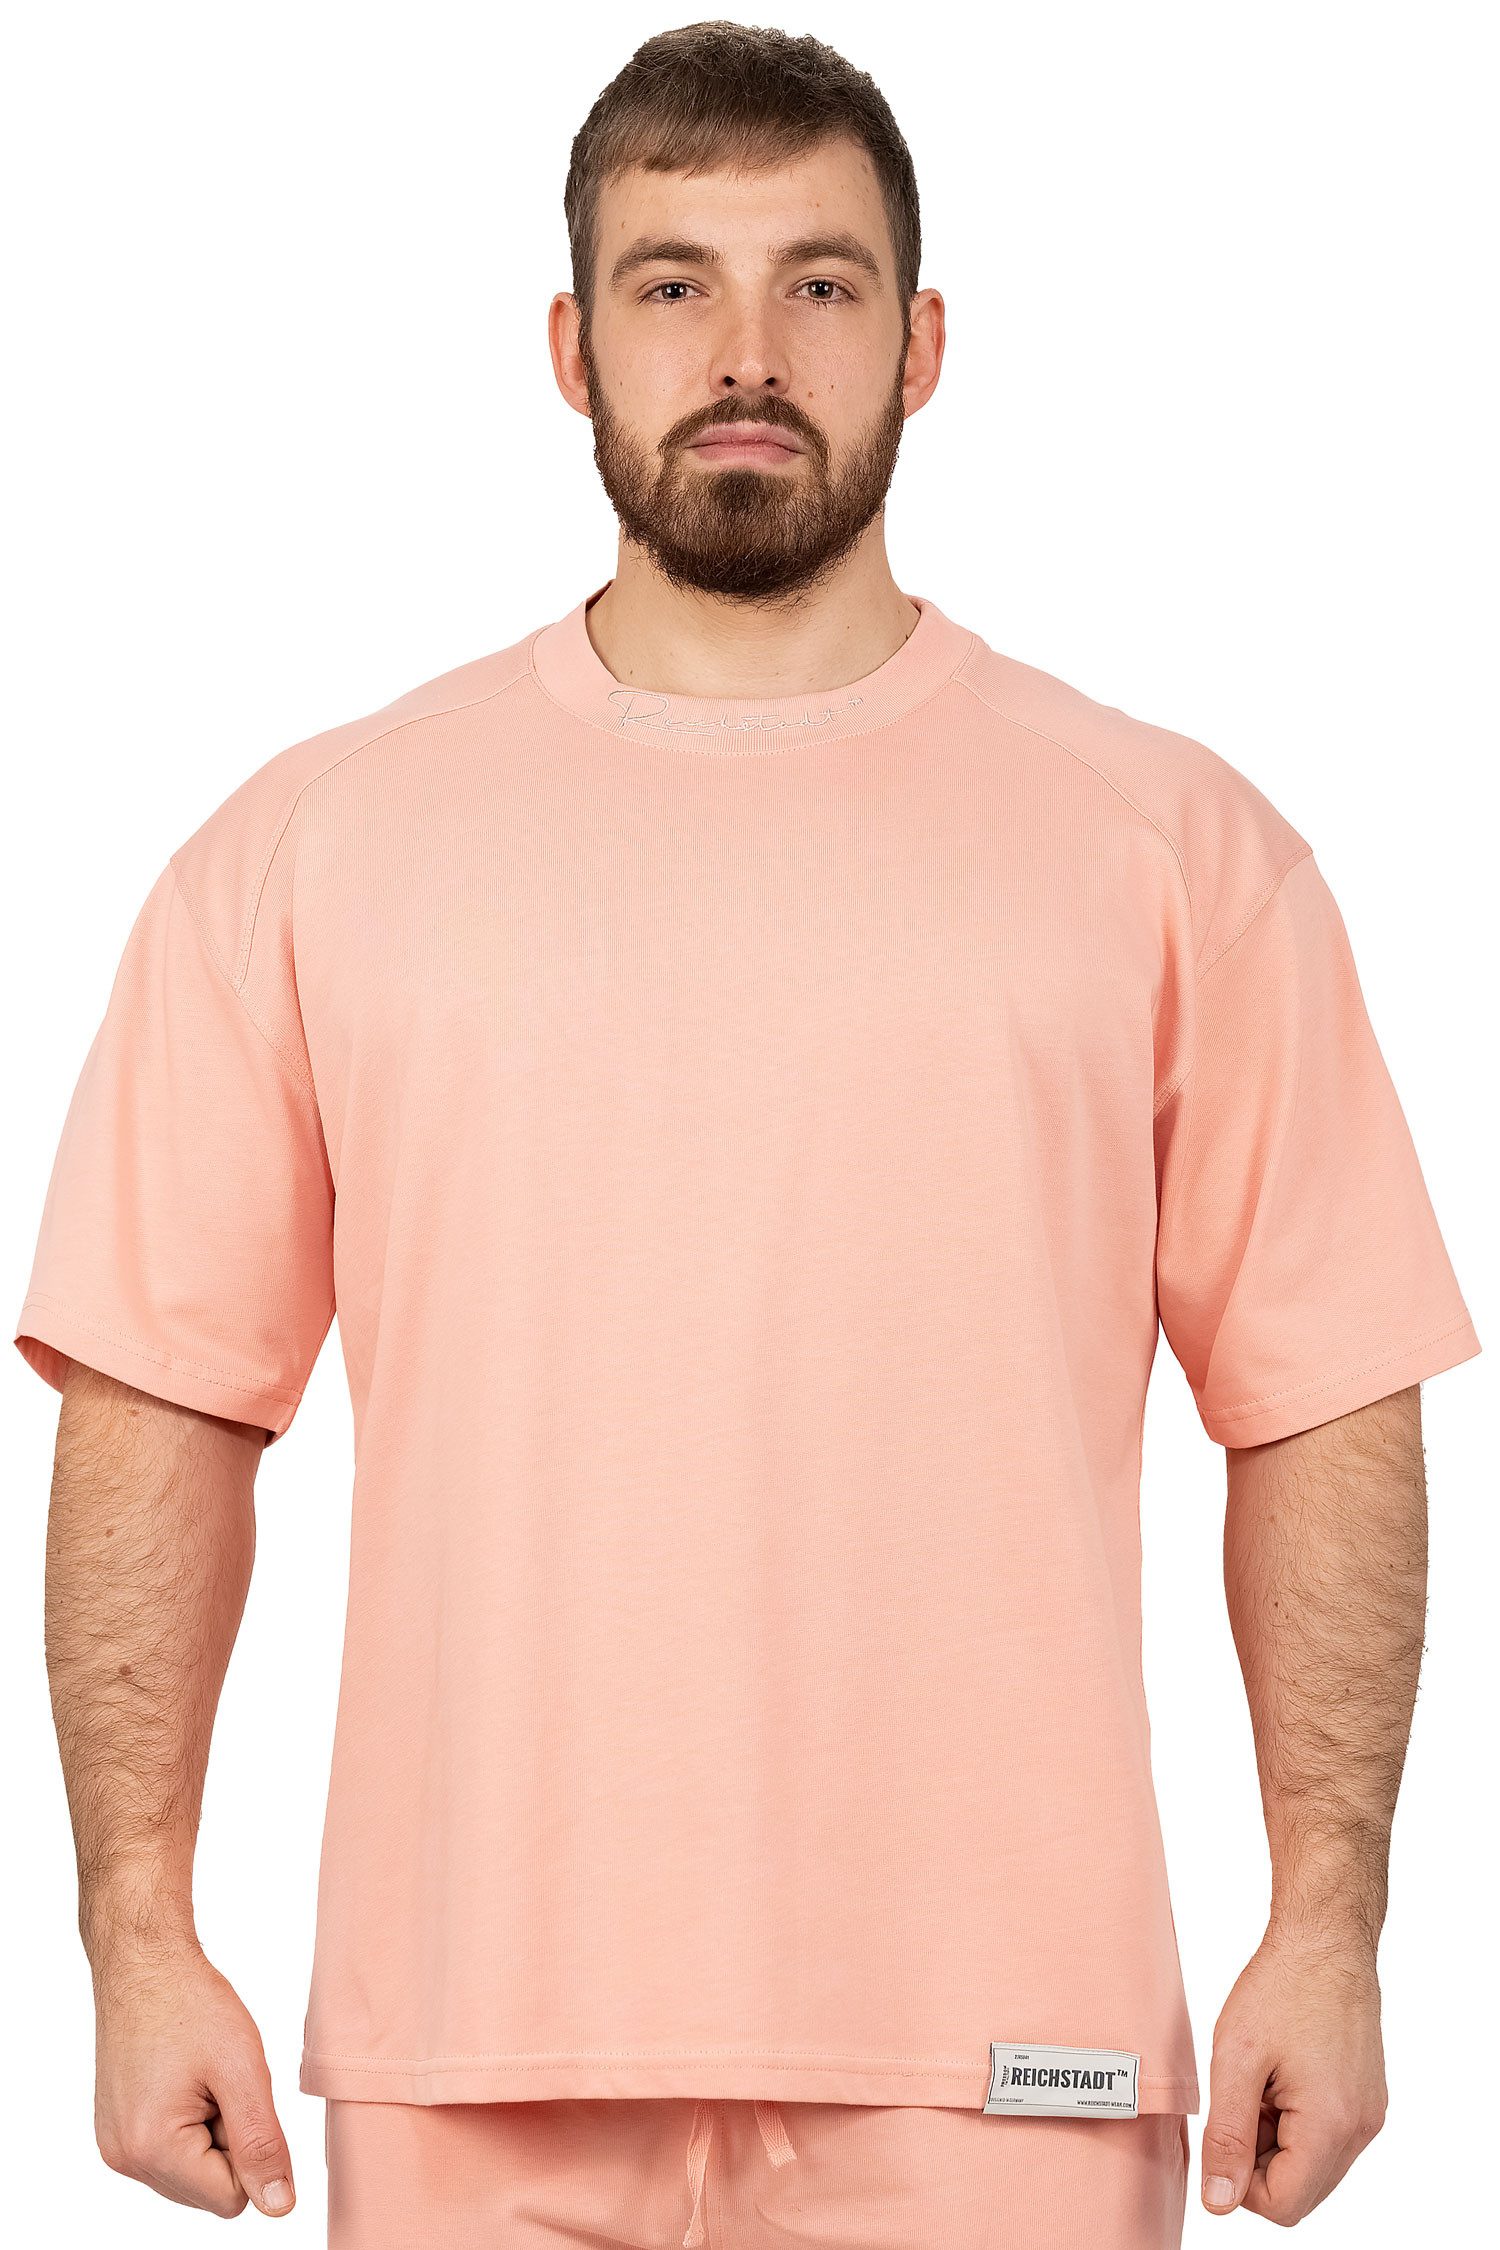 Reichstadt Trainingsshirt Sports Casual Kurzarm T-shirt 23RS041 Old Pink XXL mit Stitching am Kragen